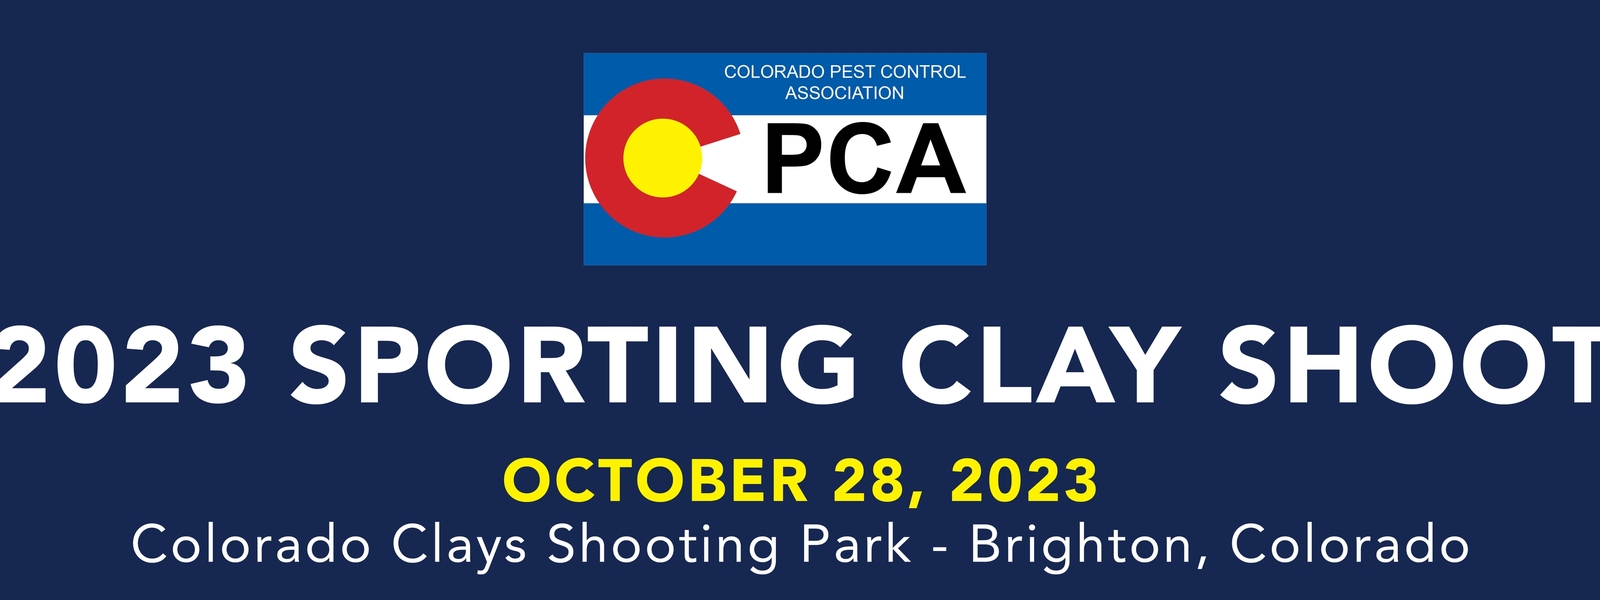 CPCA 2023 Clay Shoot